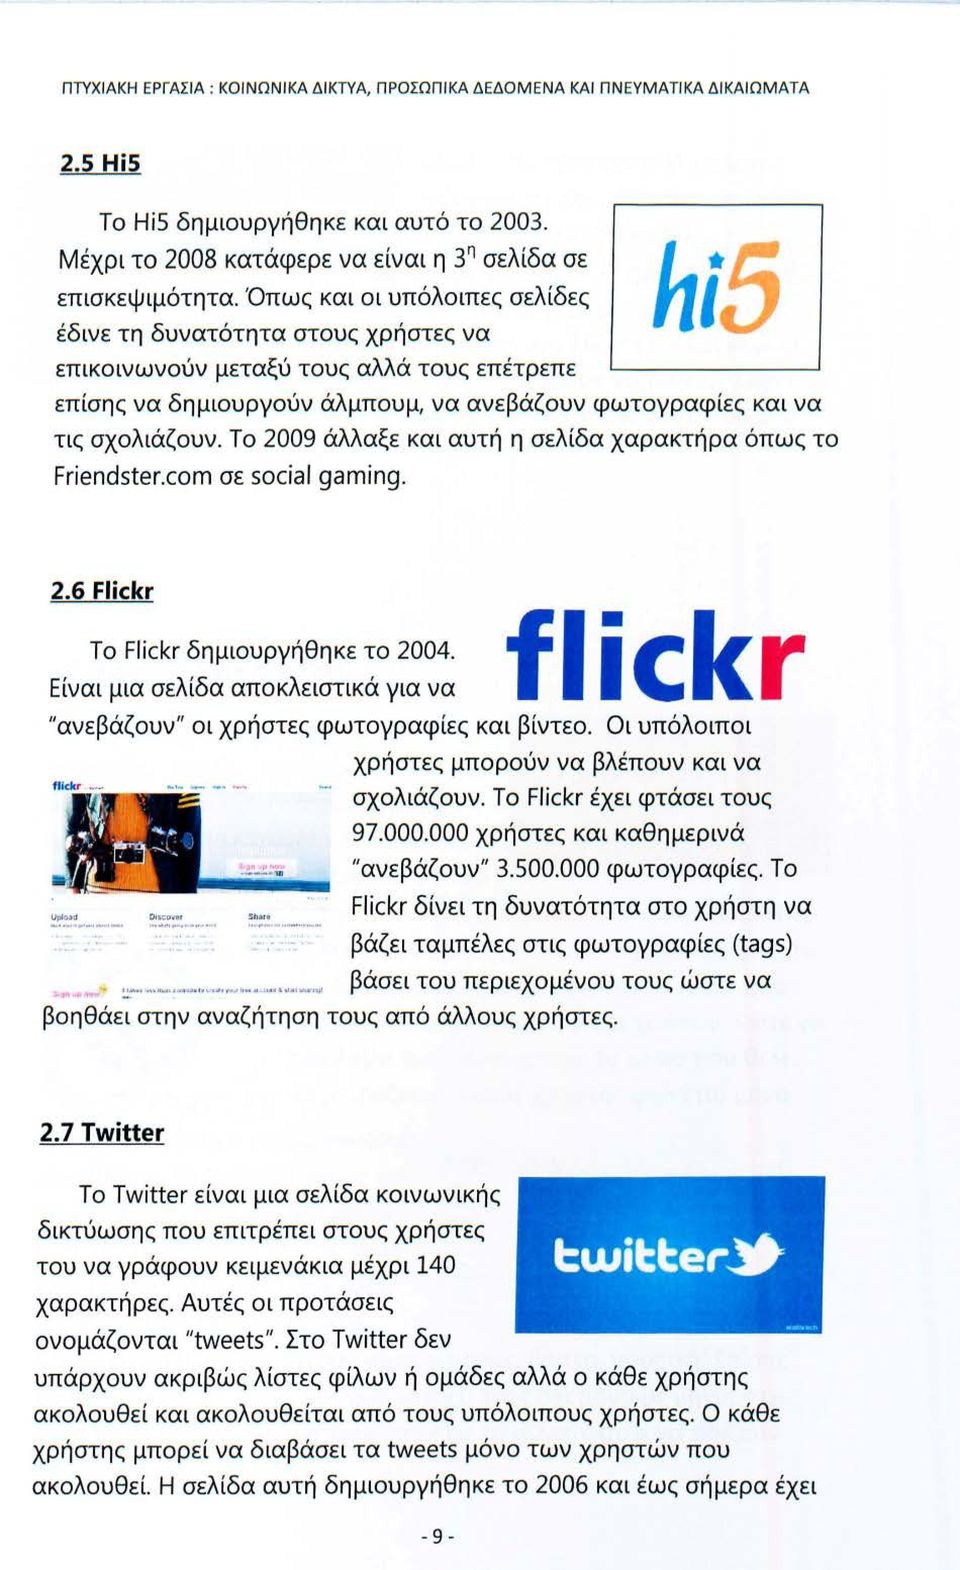 Το 2009 άλλαξε και αυτή η σελίδα χαρακτήρα όπως το Friendster.com σε social gaming. 2.6 Flickr flickr "ανεβάζουν" οι χρήστες φωτογραφίες και βίντεο. Το Flickr δημιουργήθηκε το 2004.